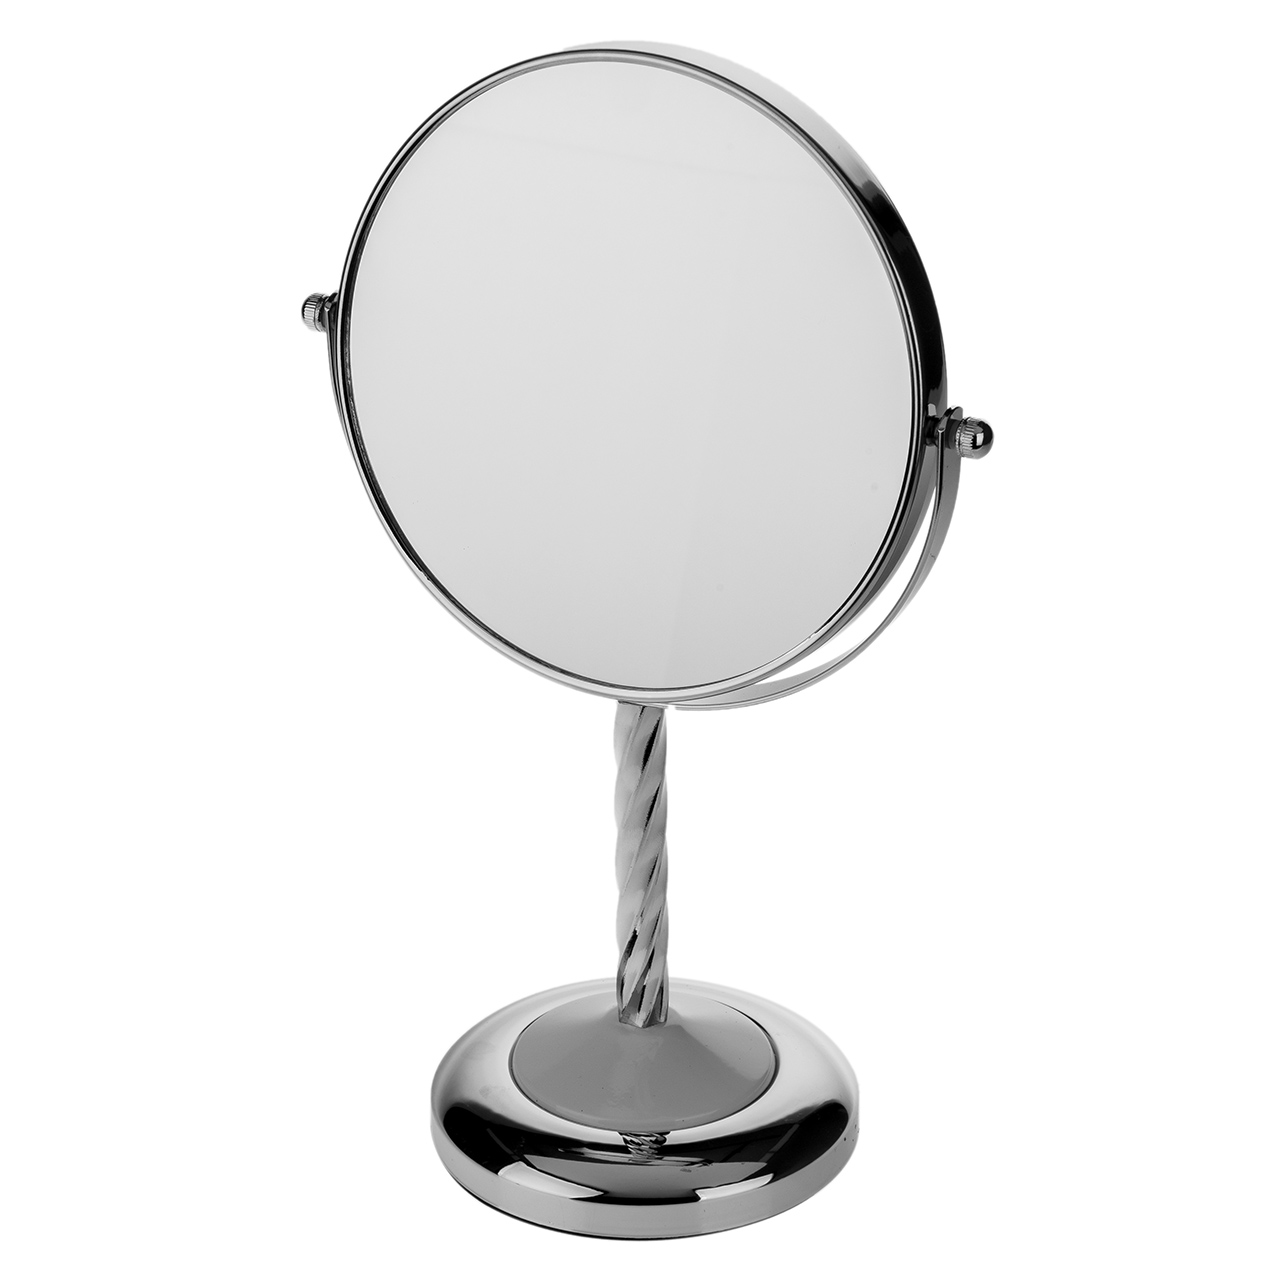 آینه آرایشی کد 3036 با بزرگنمایی 5X